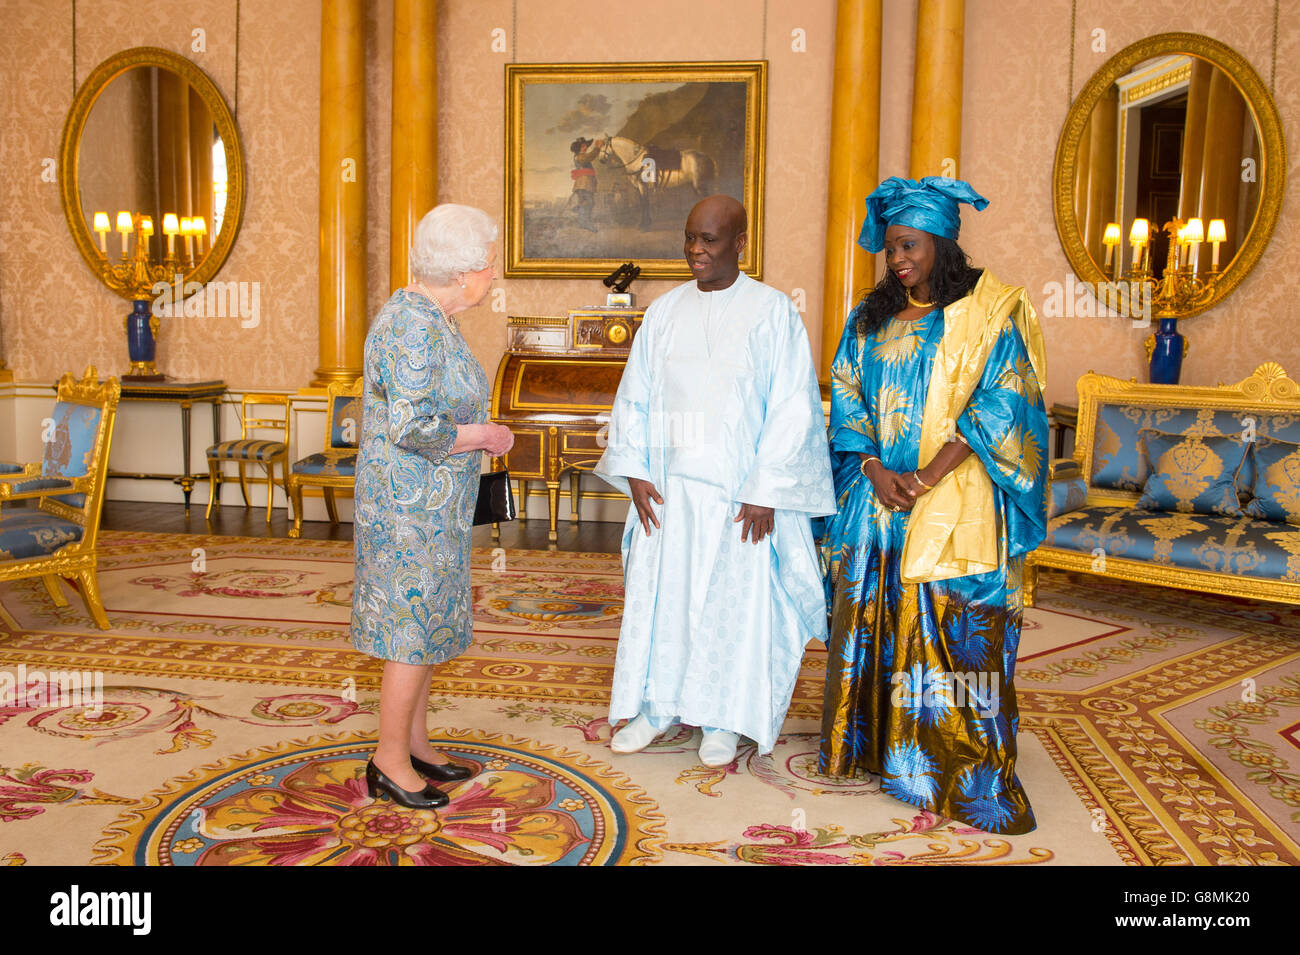 Königin Elizabeth II. Trifft den Botschafter des Senegal Cheikh Ahmadou Dieng und seine Frau, Frau Dieng, während er seine Beglaubigungsschreiben während einer Audienz im Buckingham Palace, London, überreichte. Stockfoto